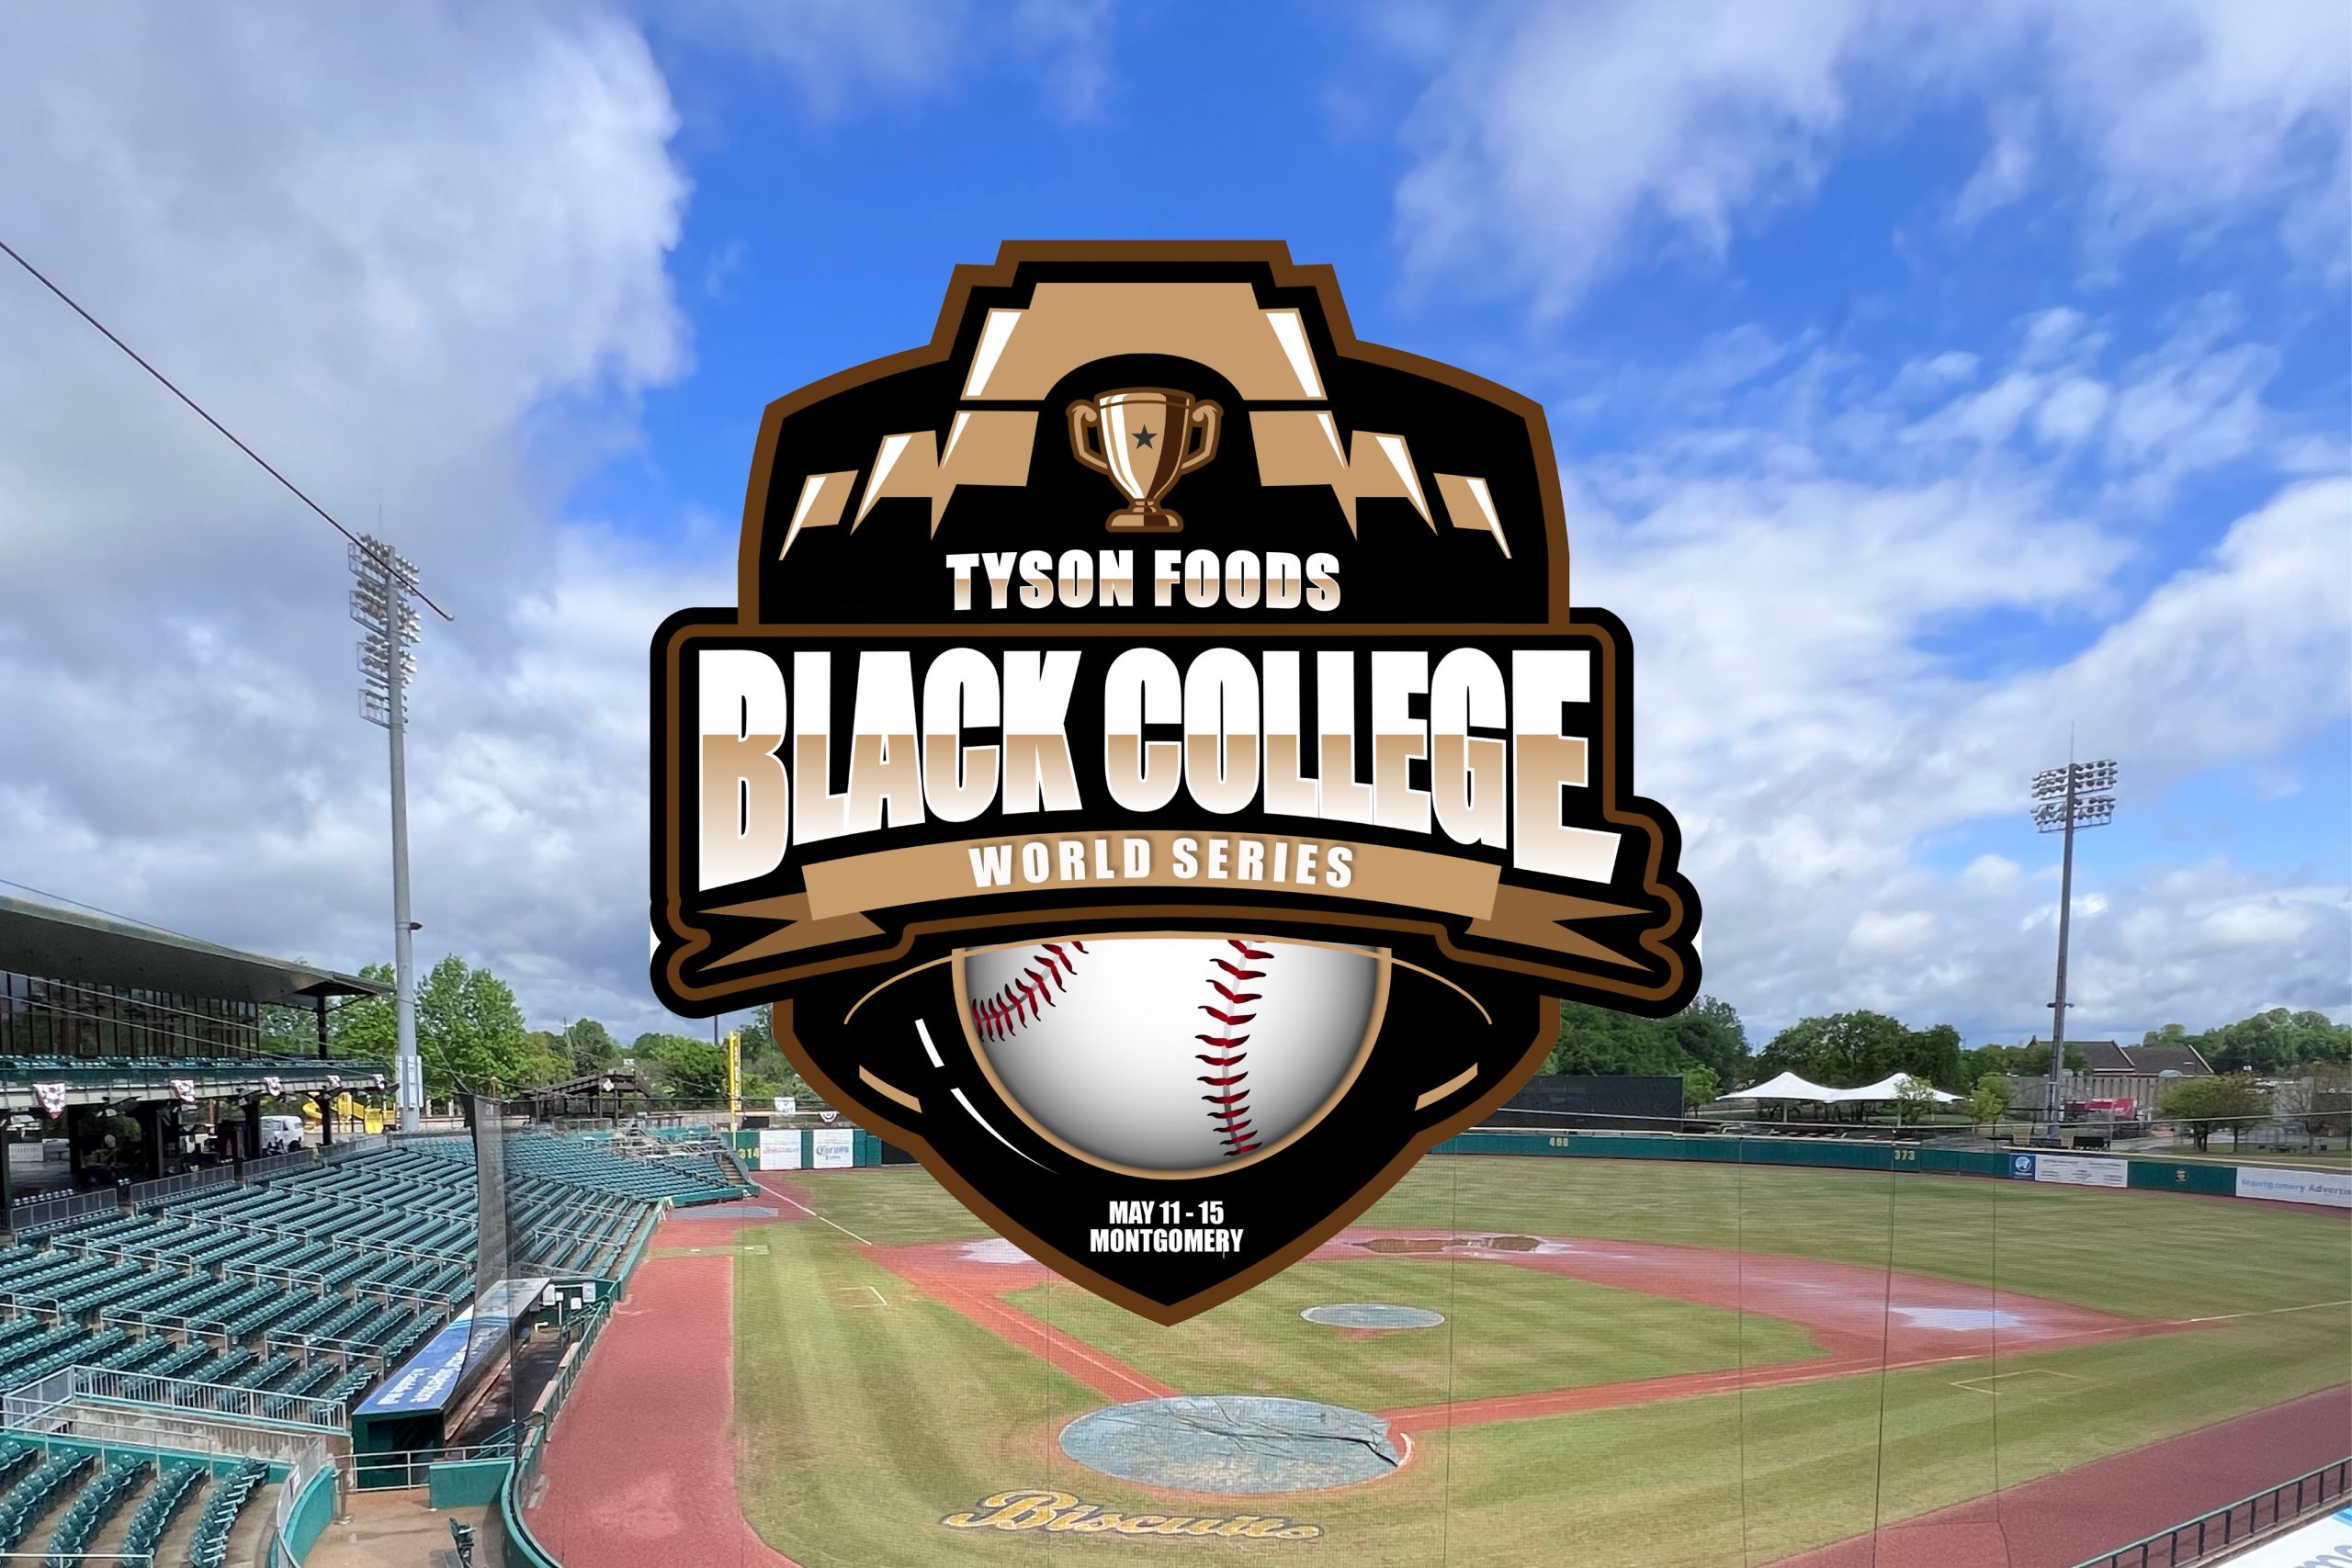 Black College World Series runs Wednesday to Saturday WAKA 8